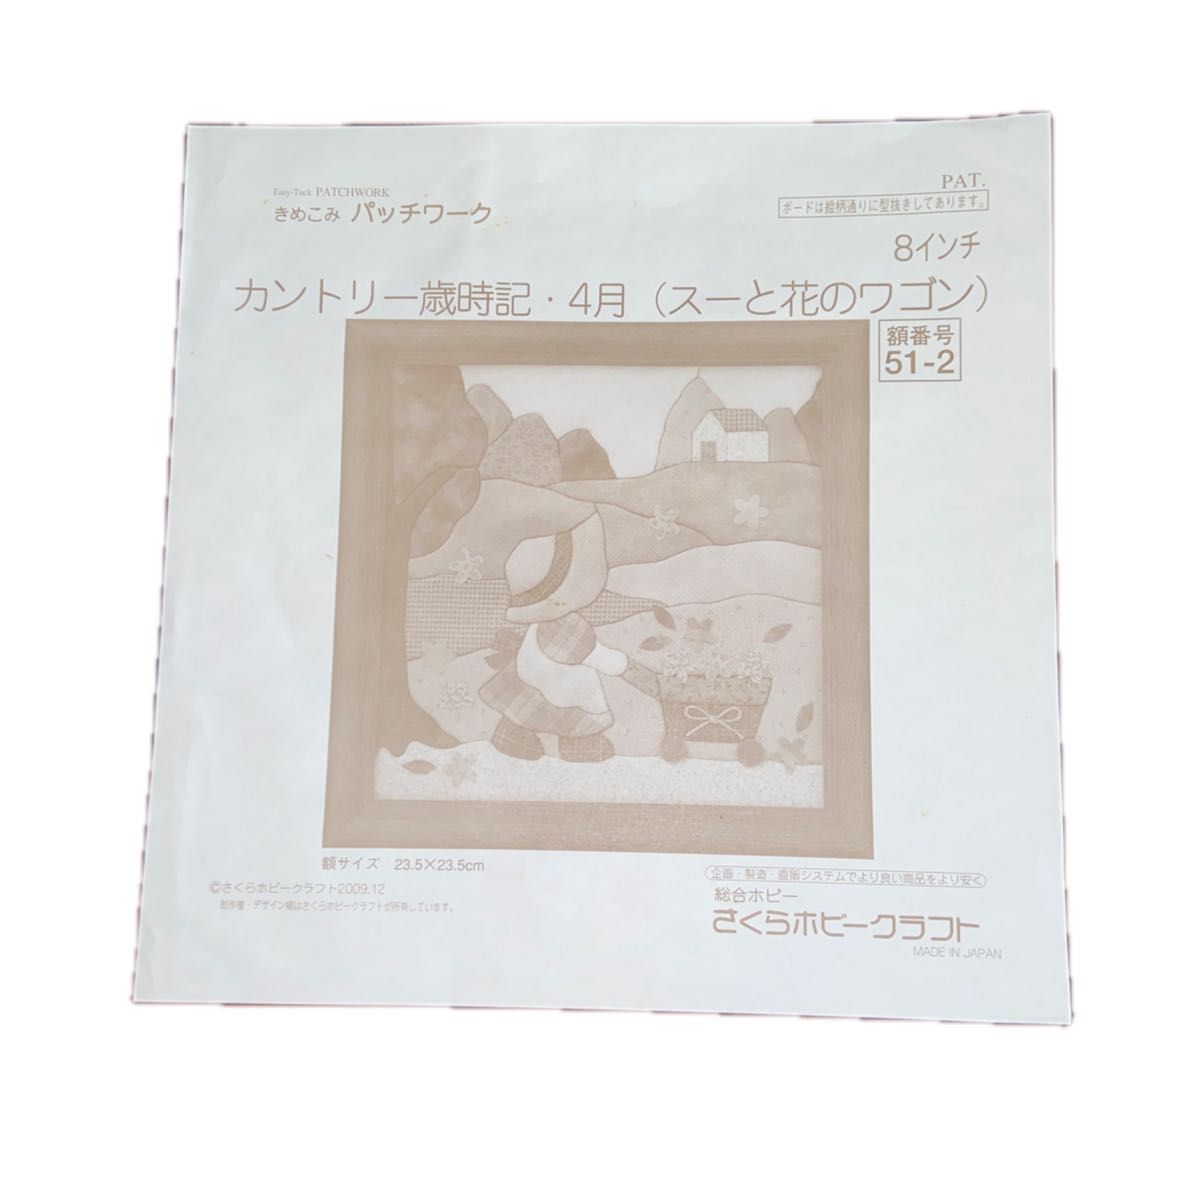 木目込み額(完成品) カントリー歳時記(スーと花のワゴン) 23.5cm×23.5cm